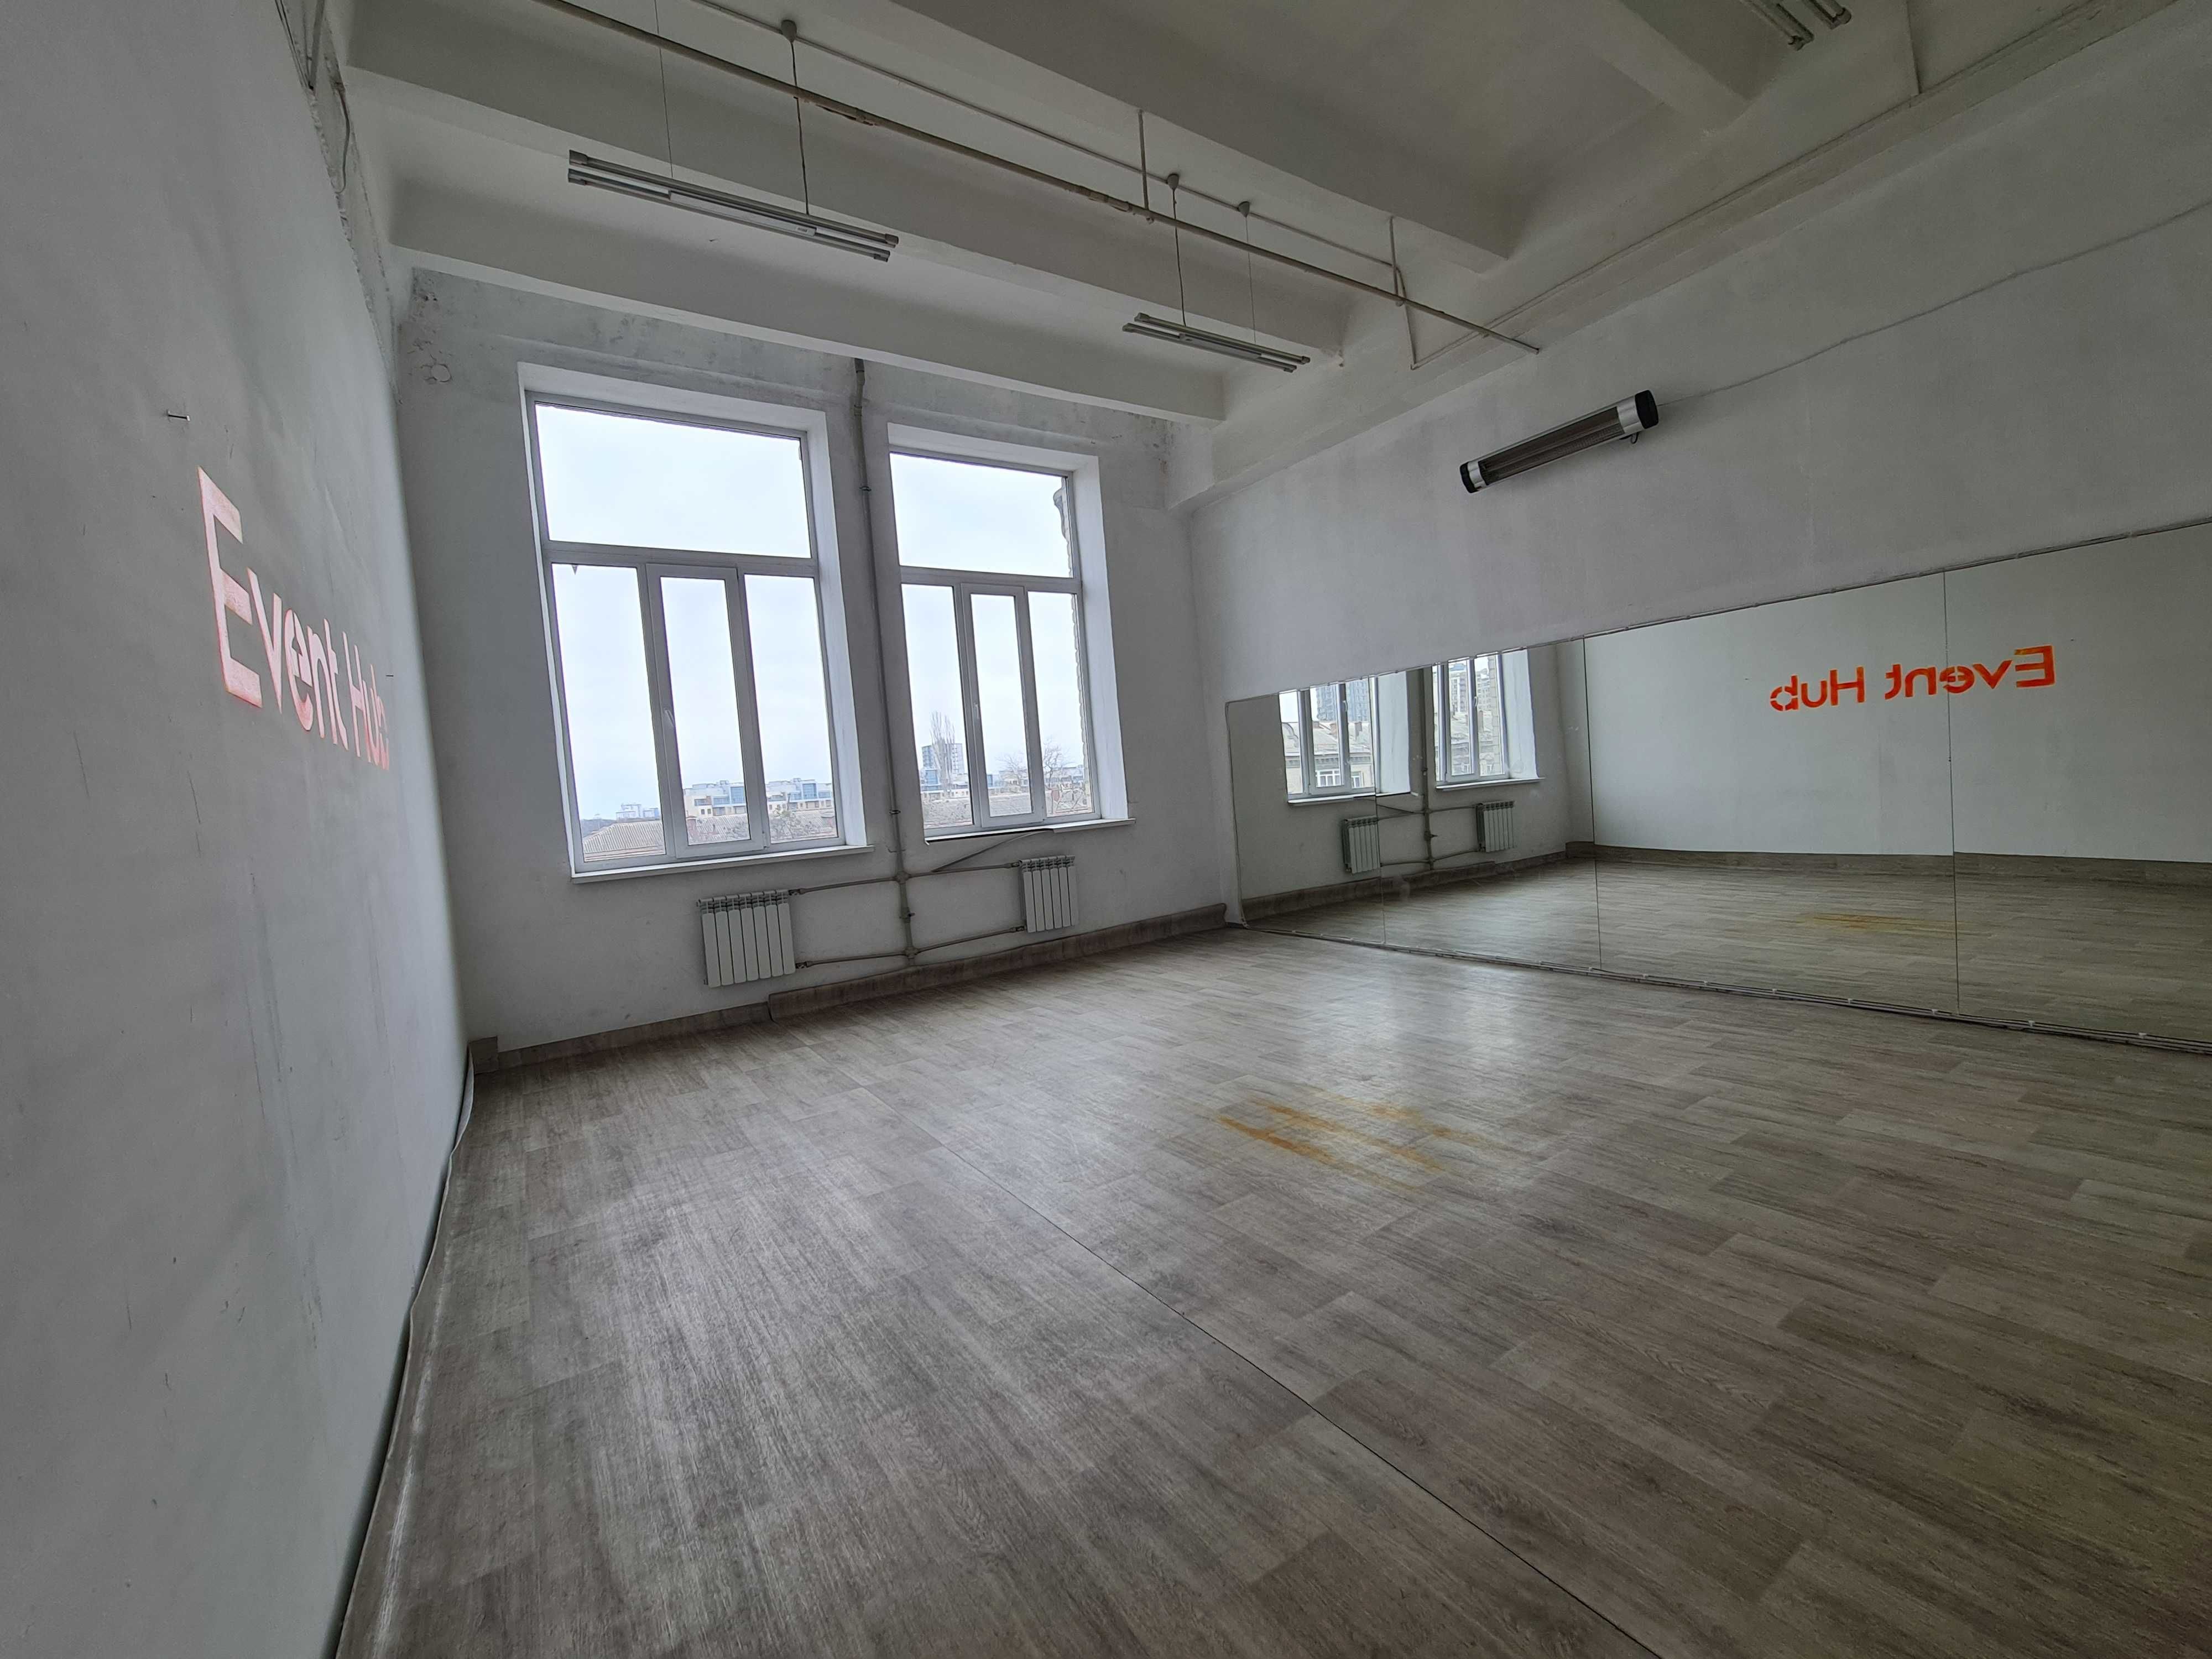 Аренда танцевального зала 45 м, зал для танцев, балета  м.Шулявская